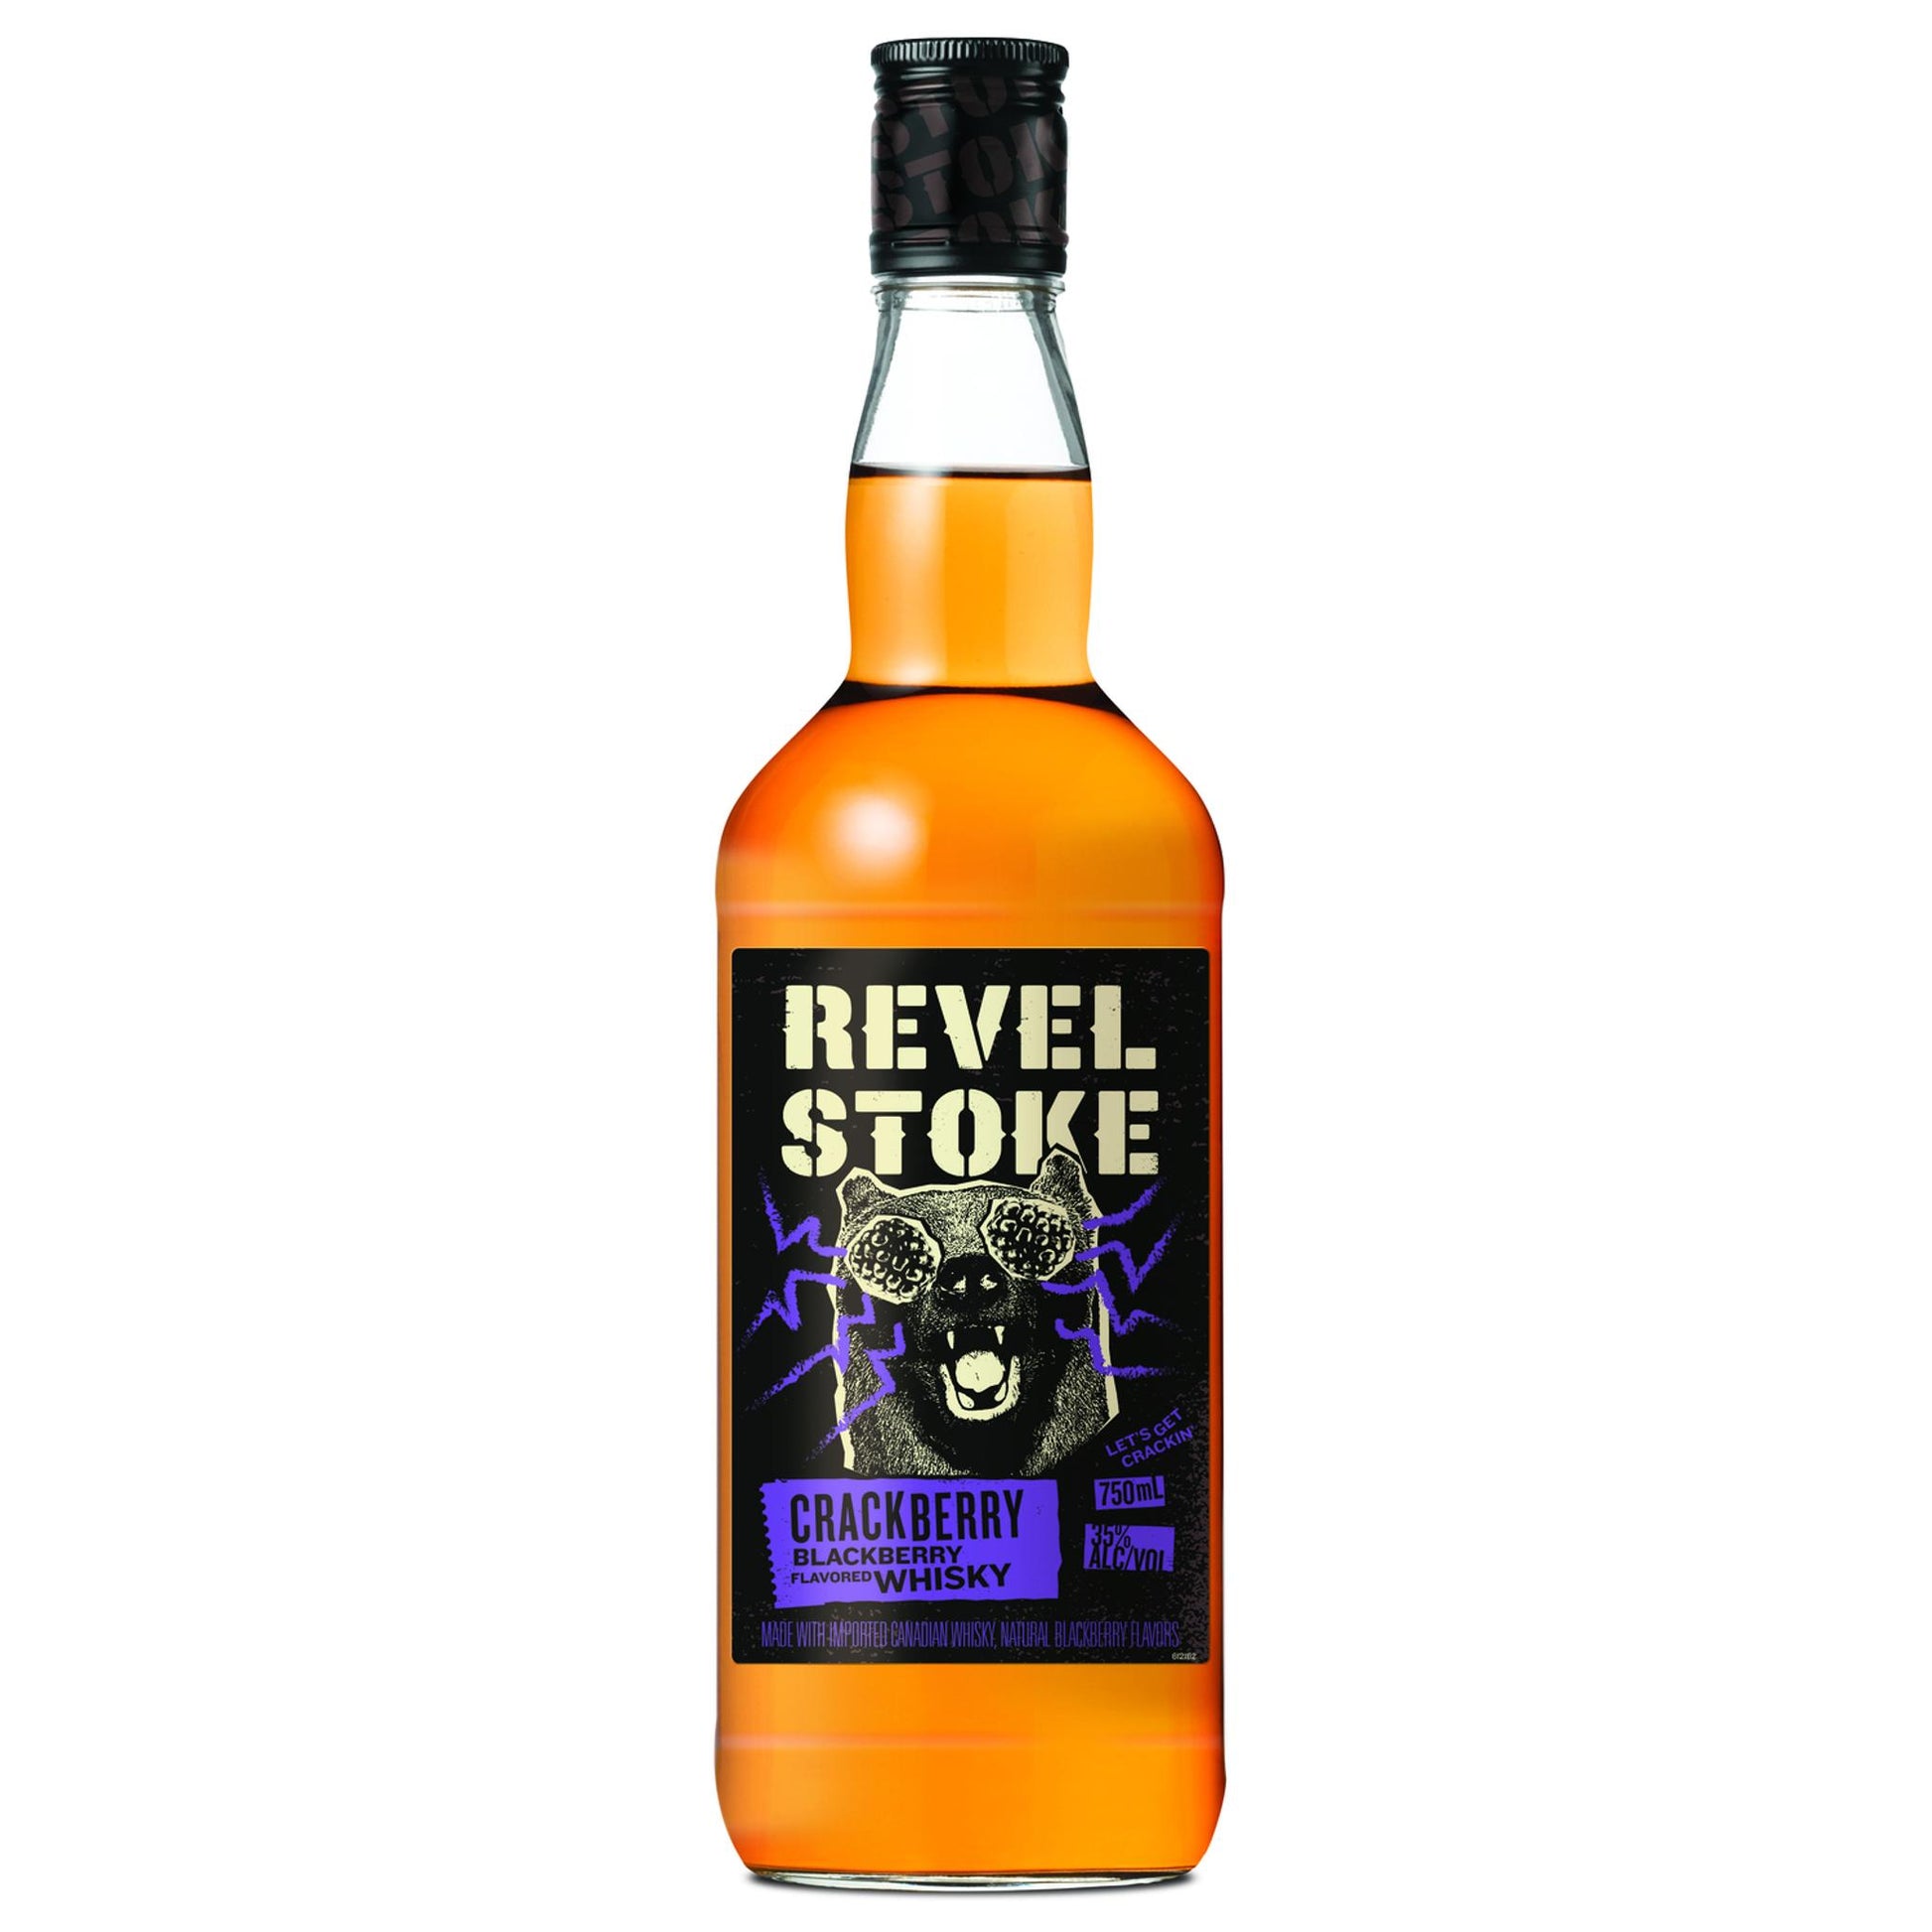 Revel Stoke Blackberry Flavored Whiskey Crackberry - Liquor Geeks